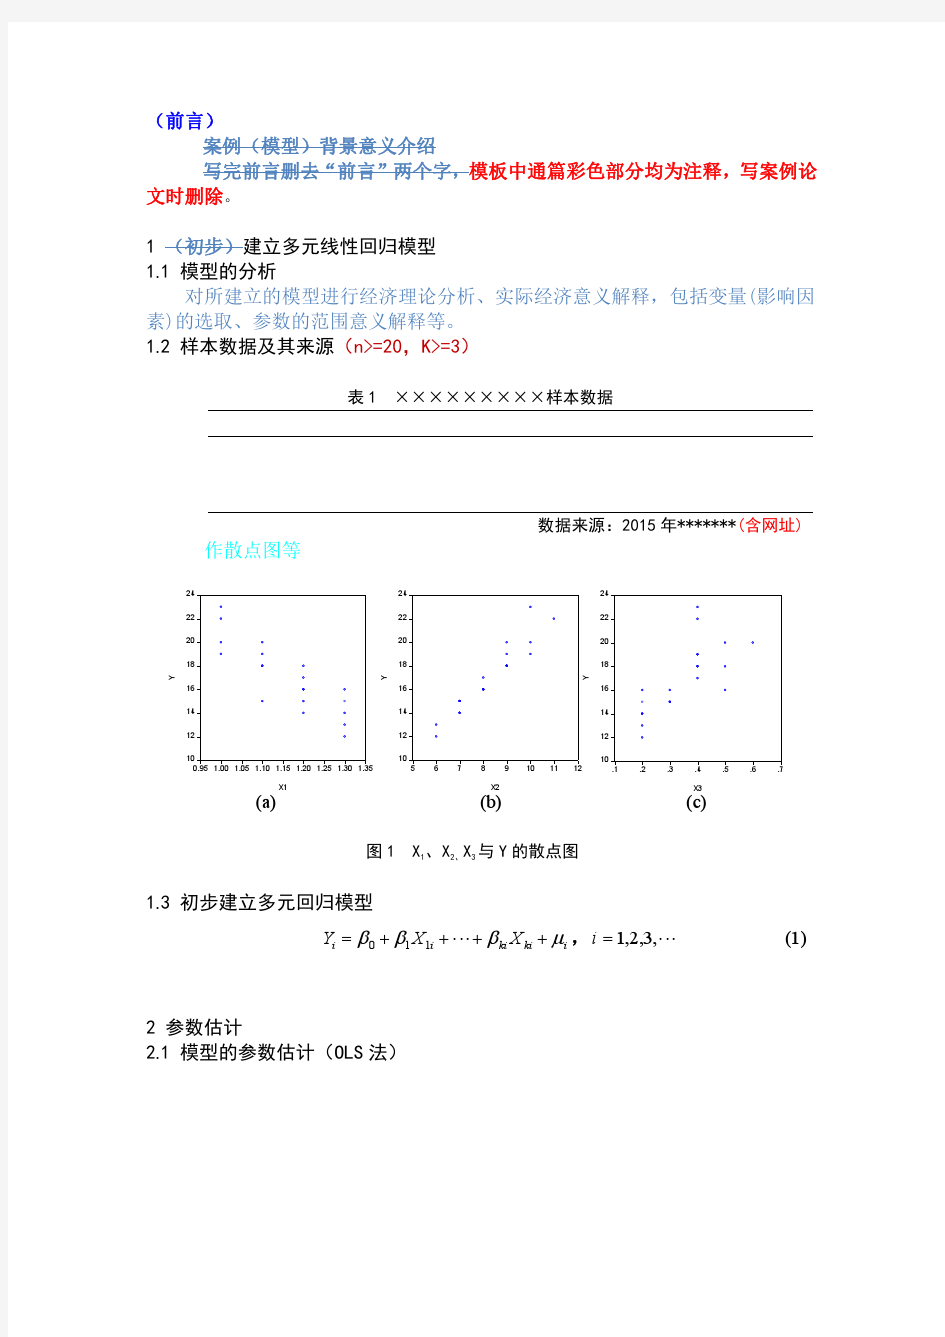 经济计量分析课程论文(模板及格式要求)